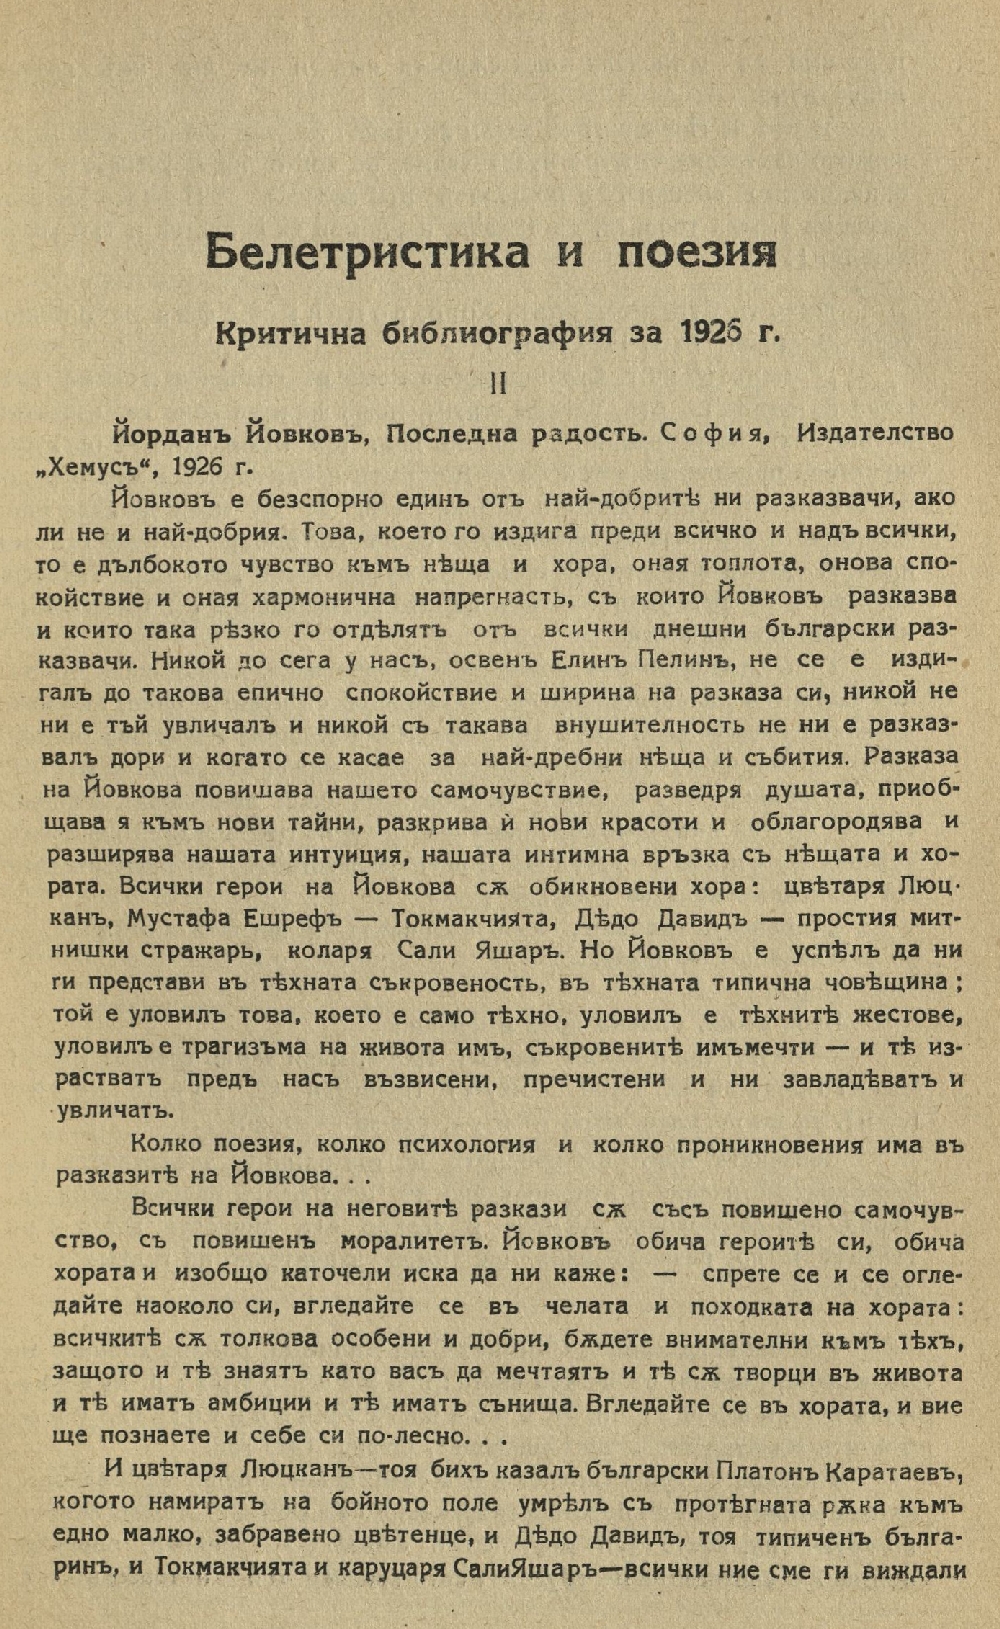 Критична библиография за 1926 г.